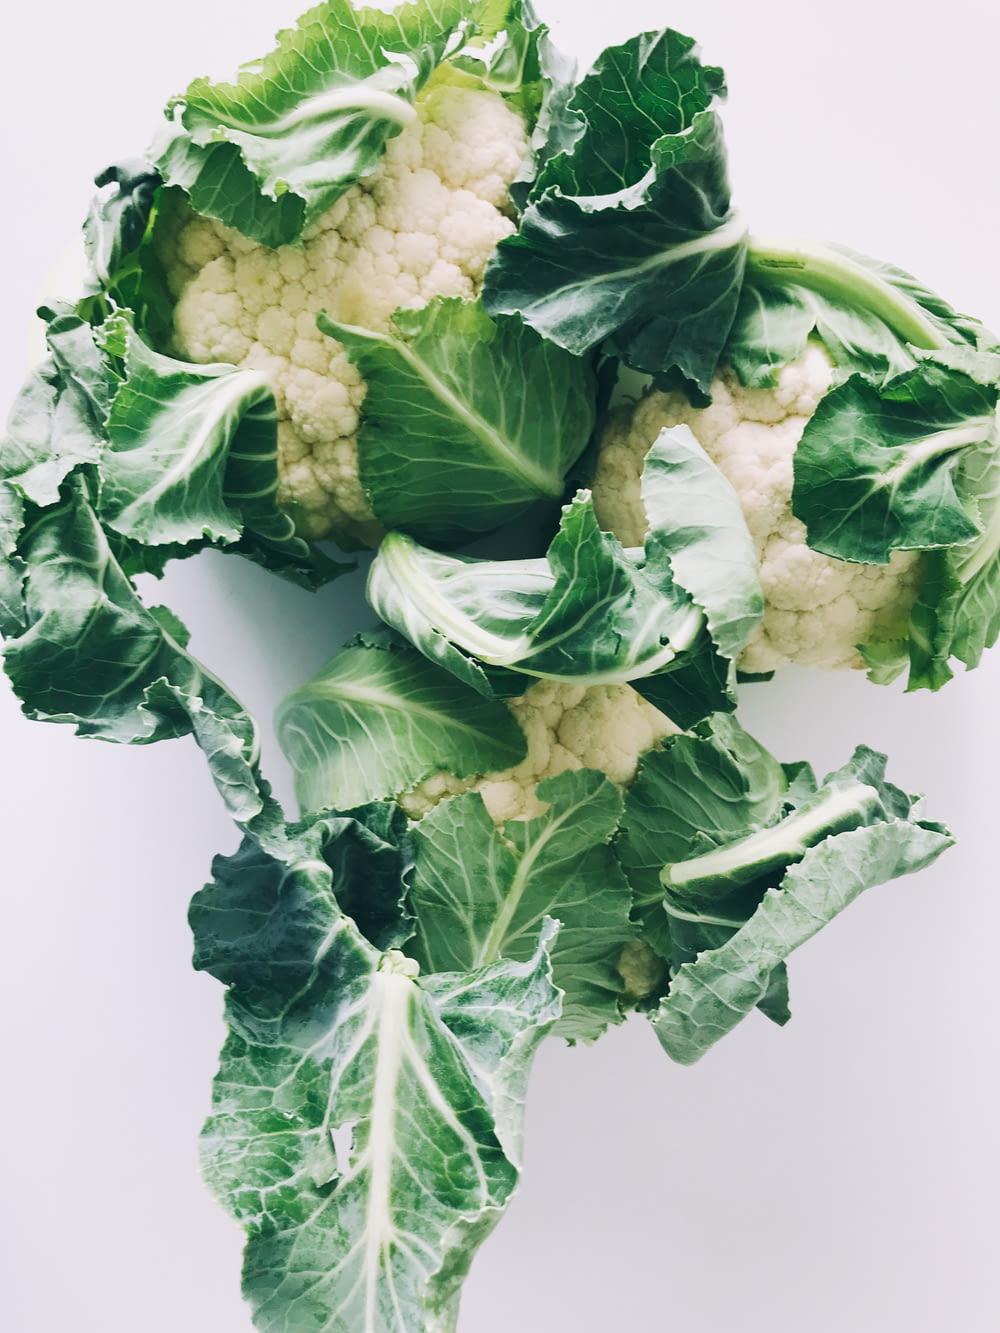 verdura verde y blanca sobre superficie blanca